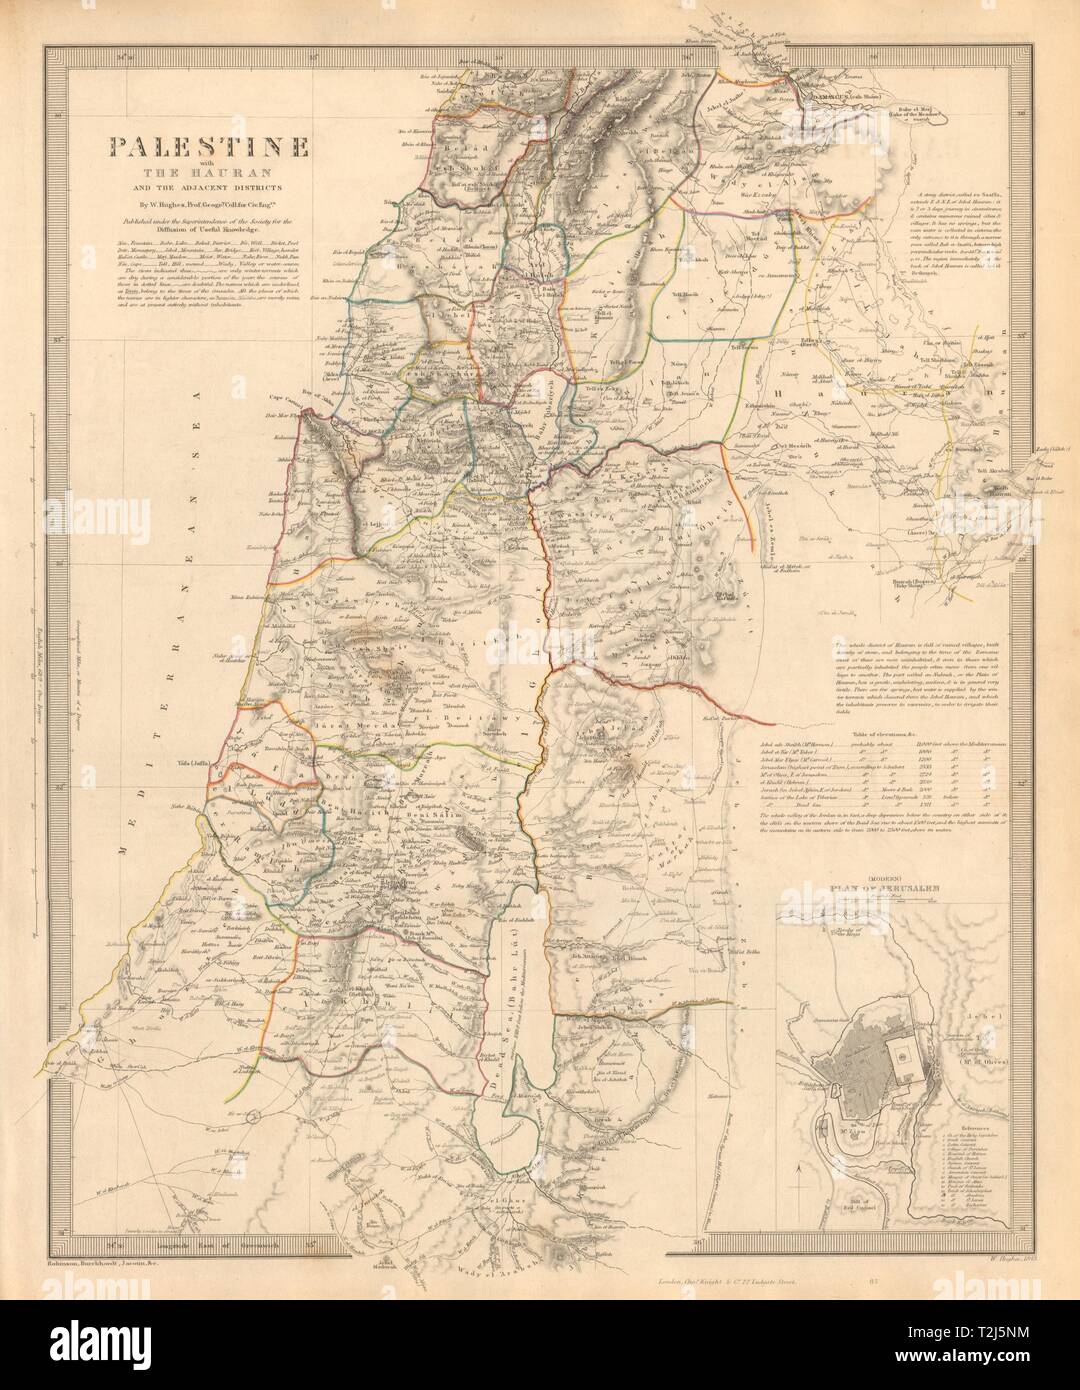 Palästina mit dem Hauran. Israel Jordanien Syrien Libanon. Jerusalem. SDUK 1846 Karte Stockfoto